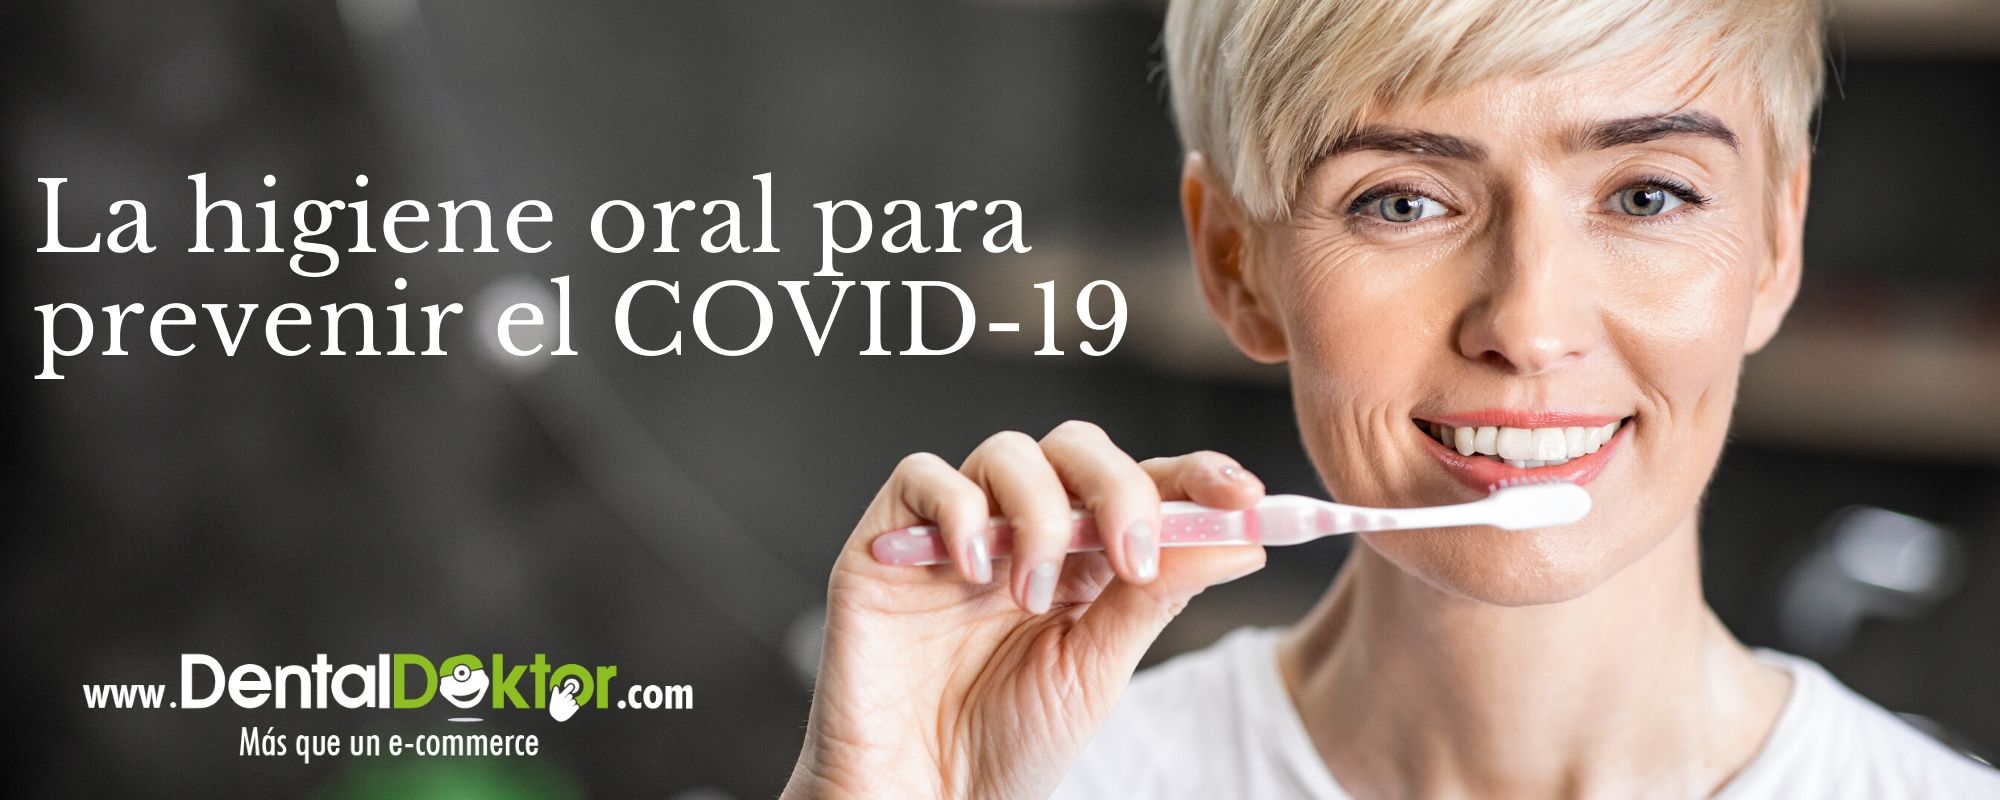 La higiene oral para prevenir el COVID-19